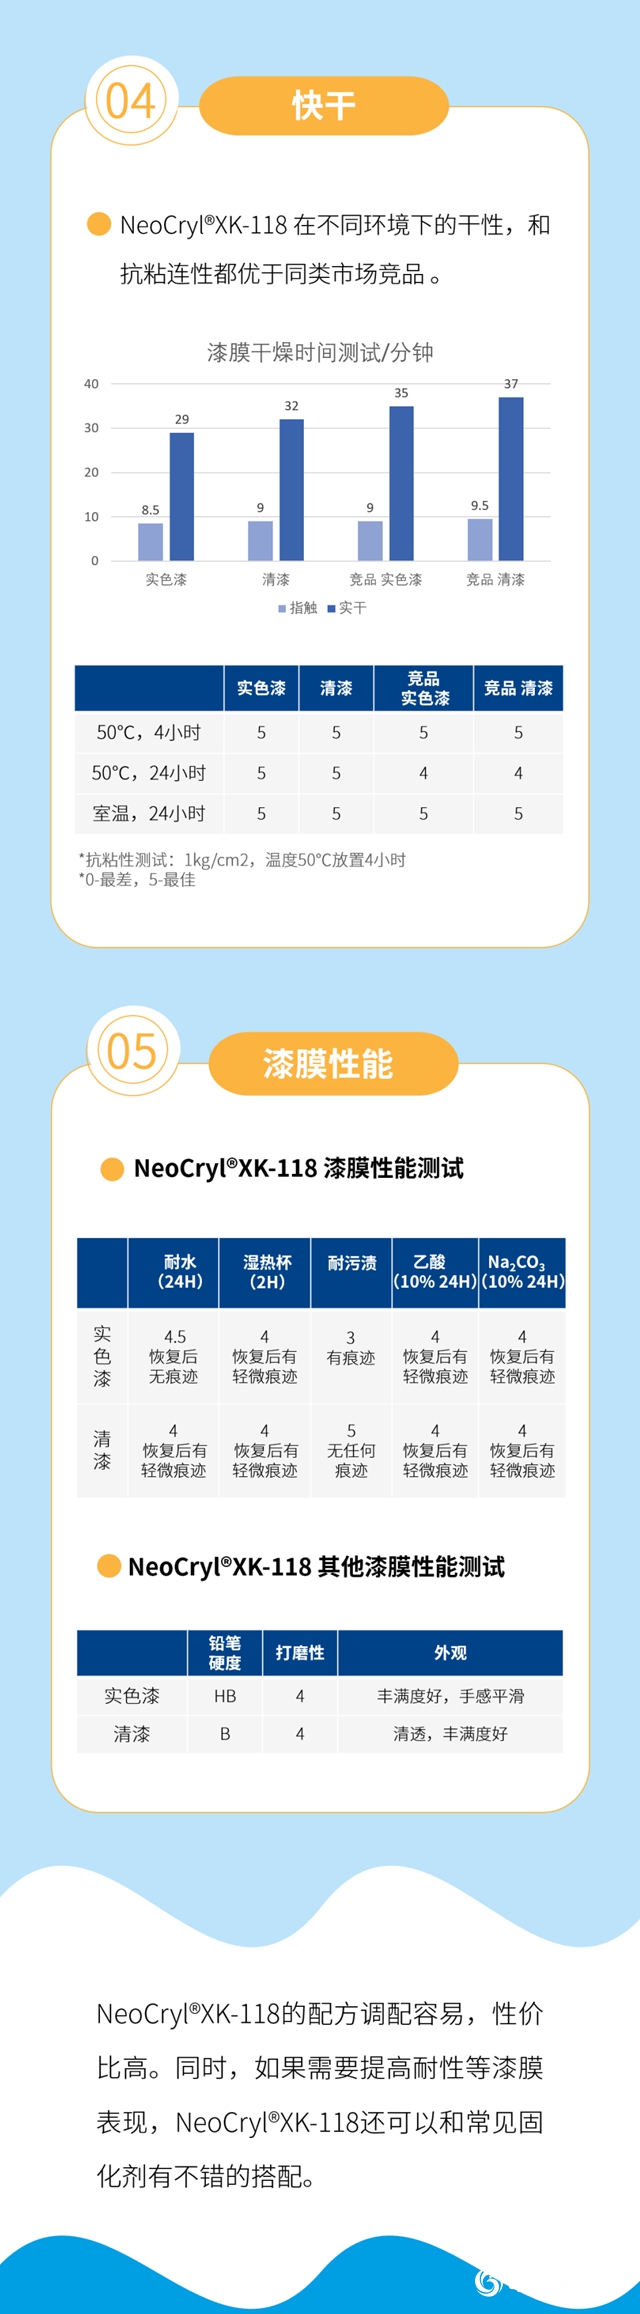 NeoCryl®XK-118，全新净味，通用型水性木器漆树脂上市